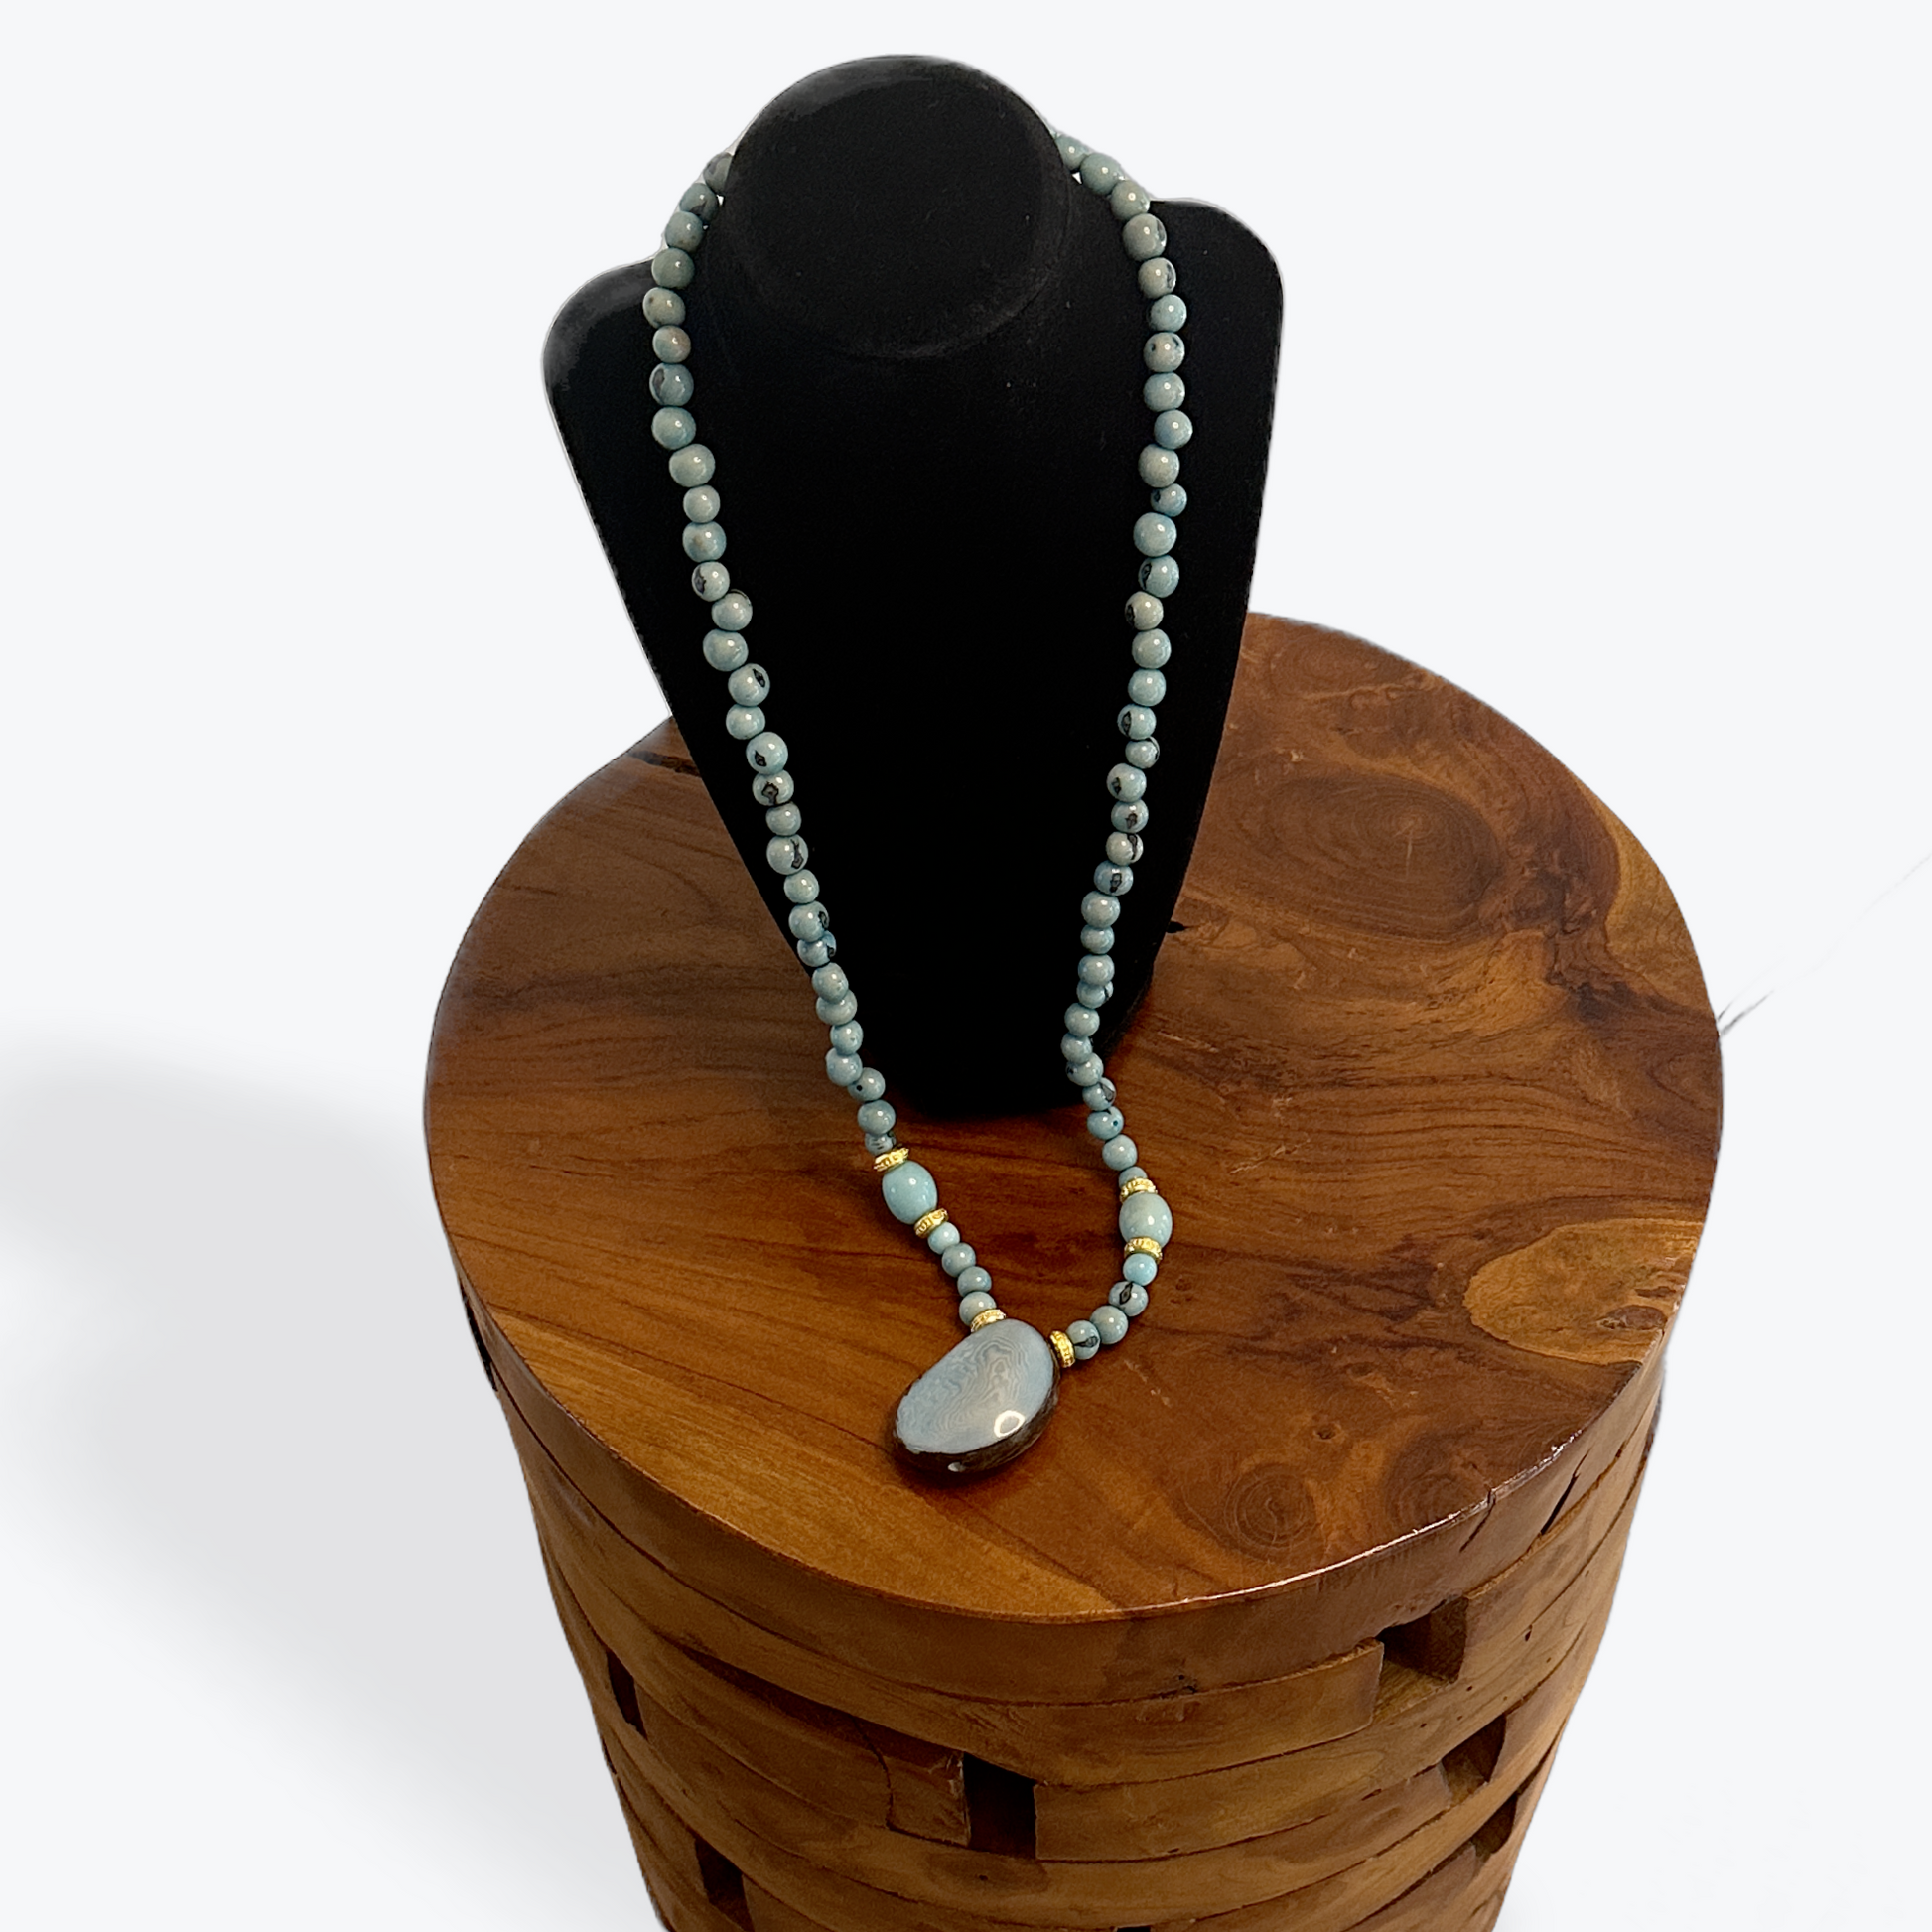 Tagua Nut Pendant Necklaces - The Hip Hat 